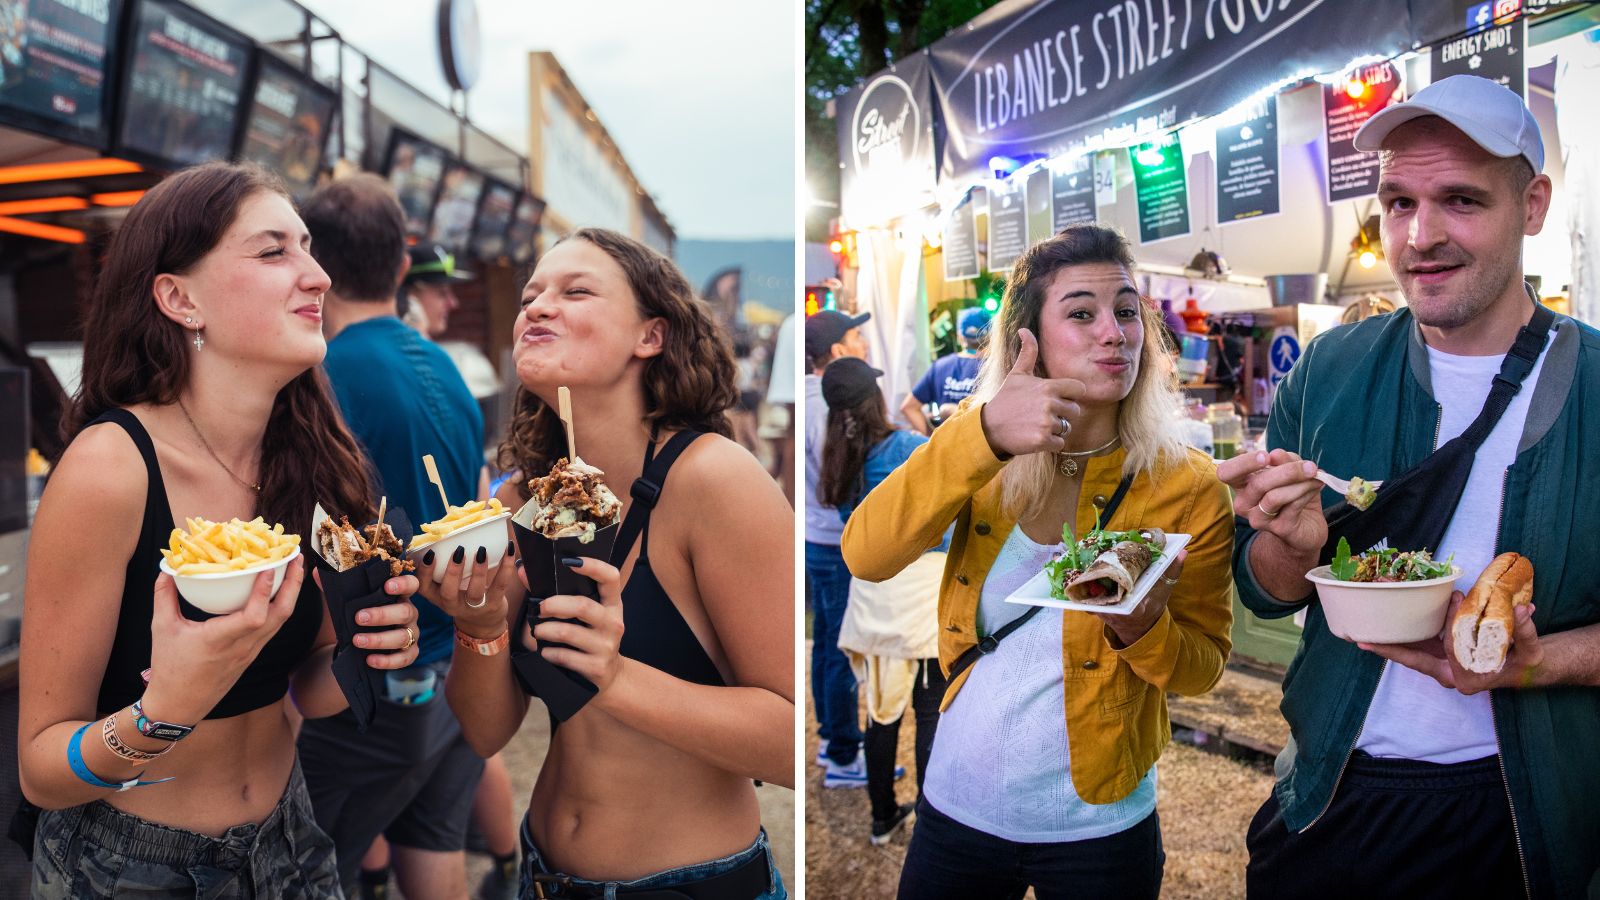 Food is een belangrijk deel van de festivalervaring. Foto's door: Timon Bachmann (links) en Anne Colliard (rechts)